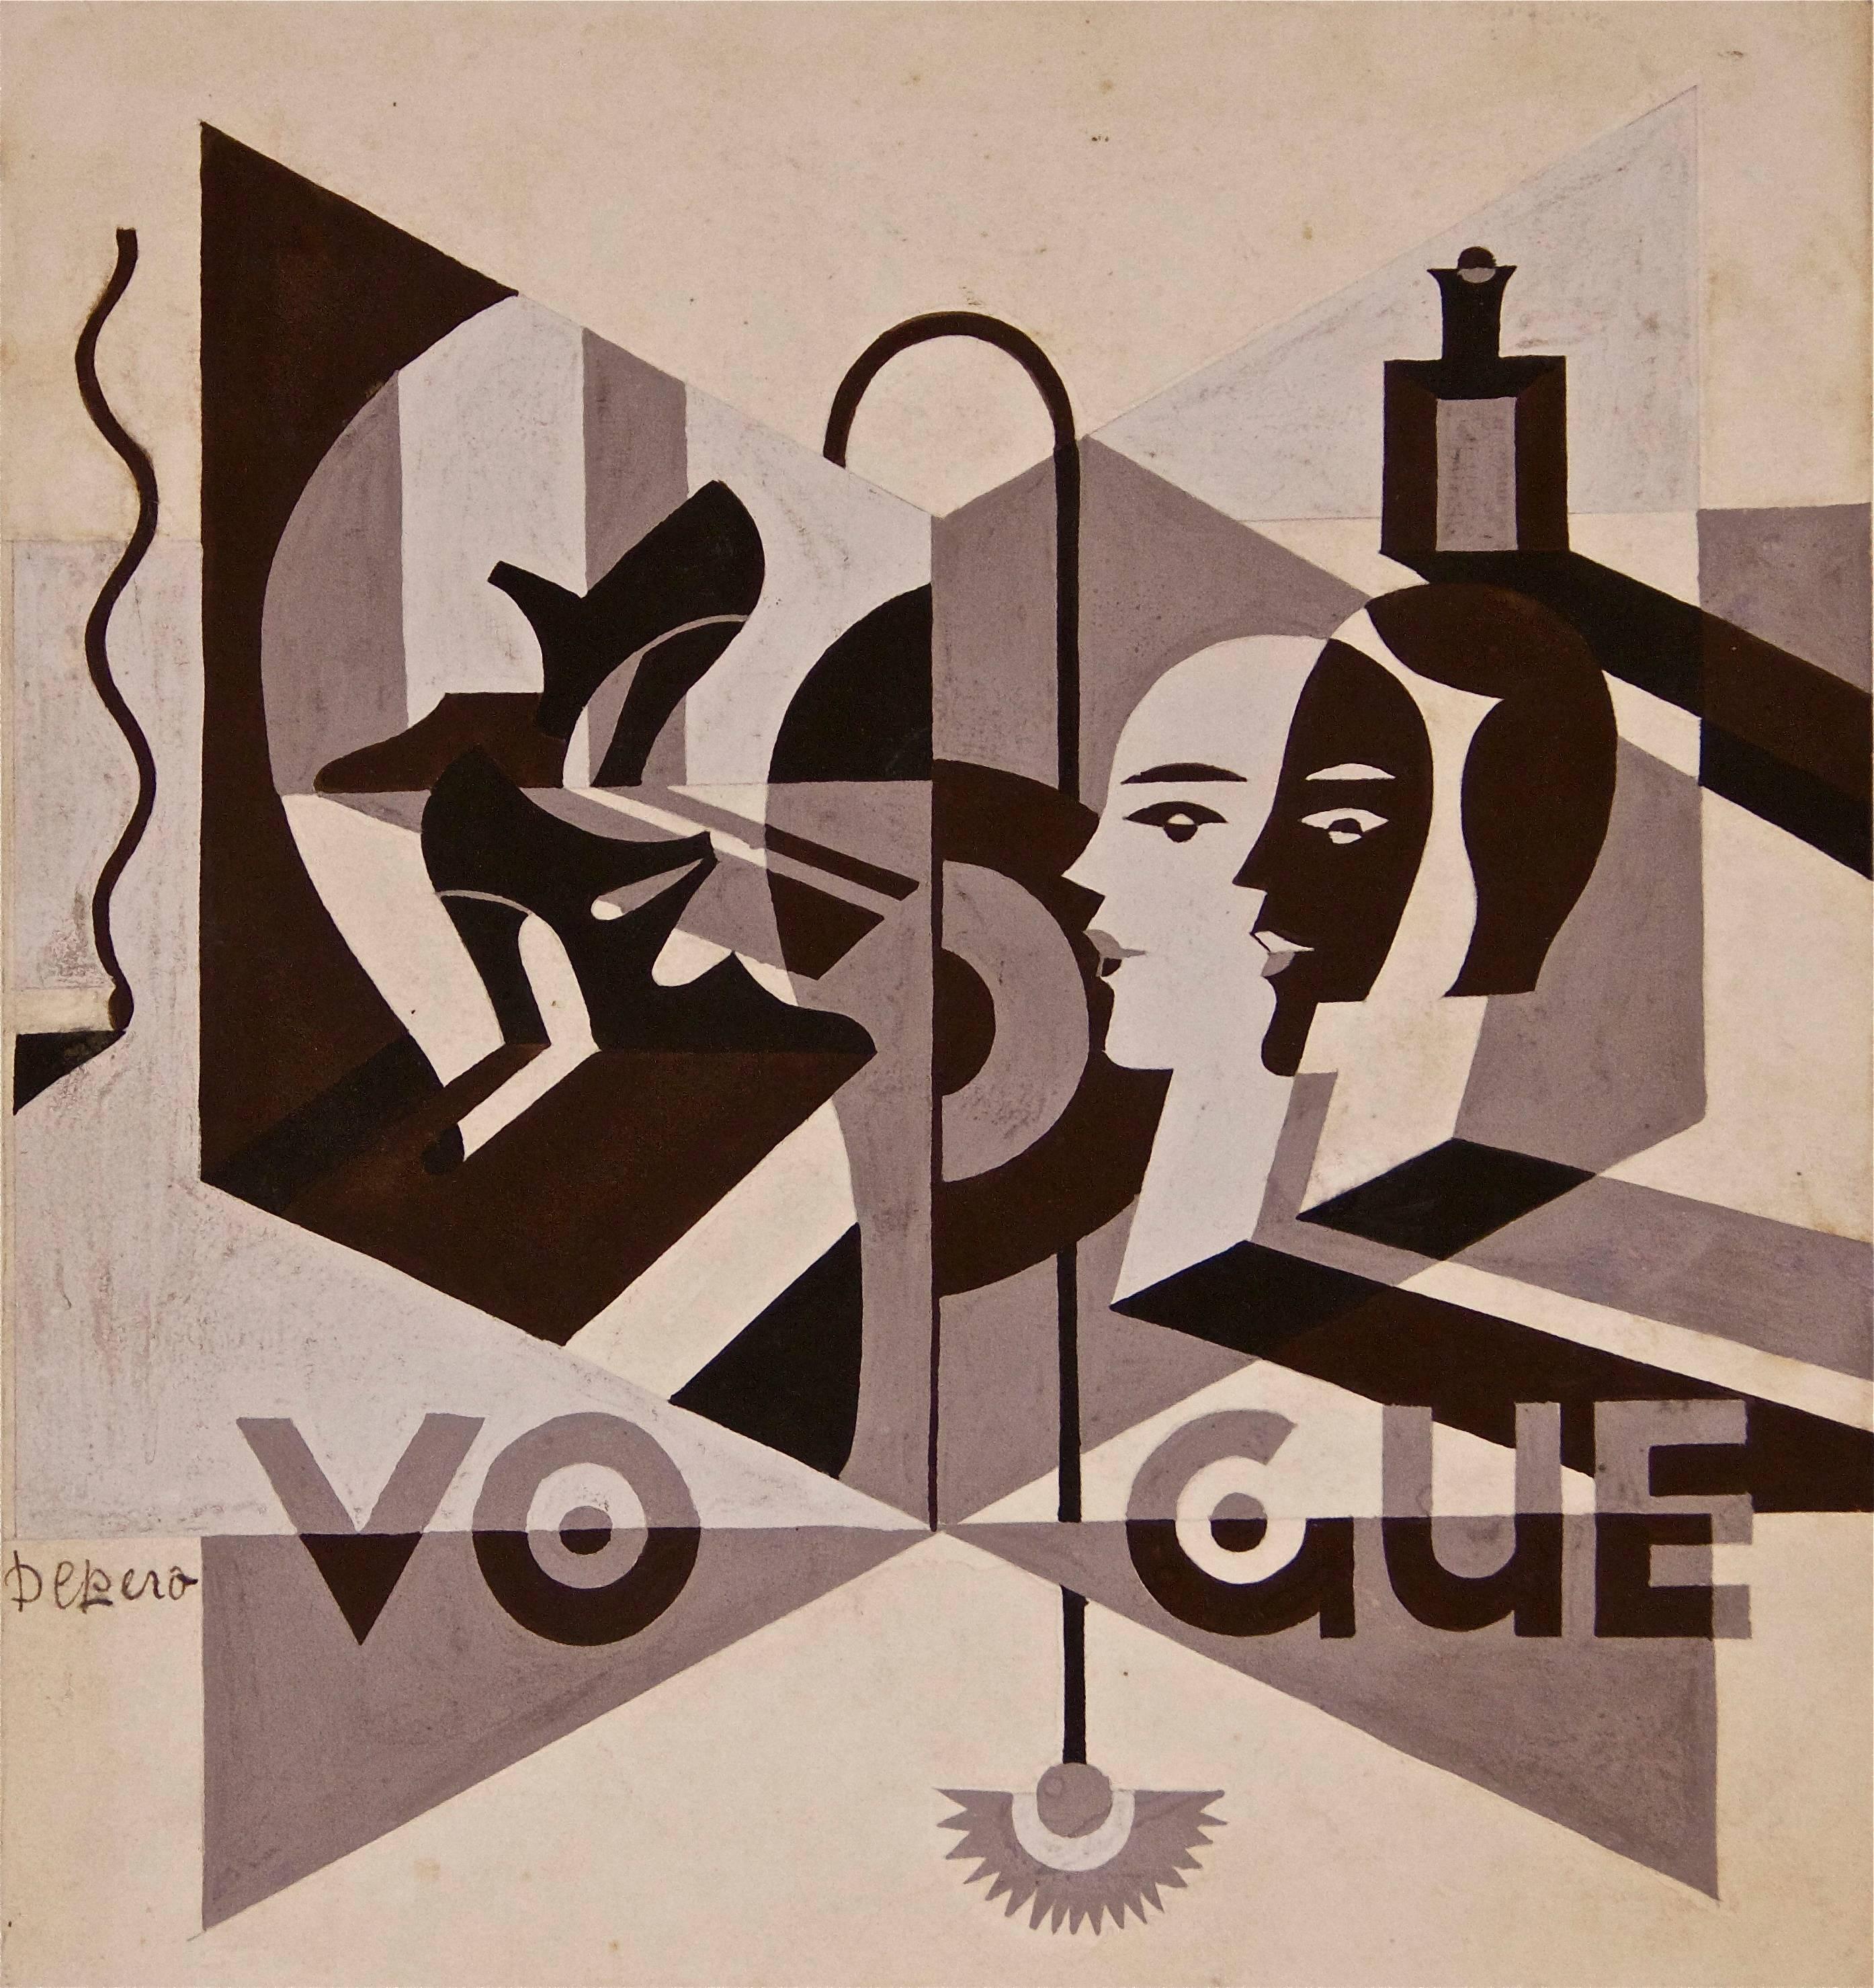 Handsigniert unten links: "Depero".

Echtheitszertifikat des Archivs von Fortunato Depero. 

1929 realisierte Fortunato Depero einige Vorschläge für interne Illustrationen der New Yorker Zeitschrift "Vogue". In diesem außergewöhnlichen Gemälde